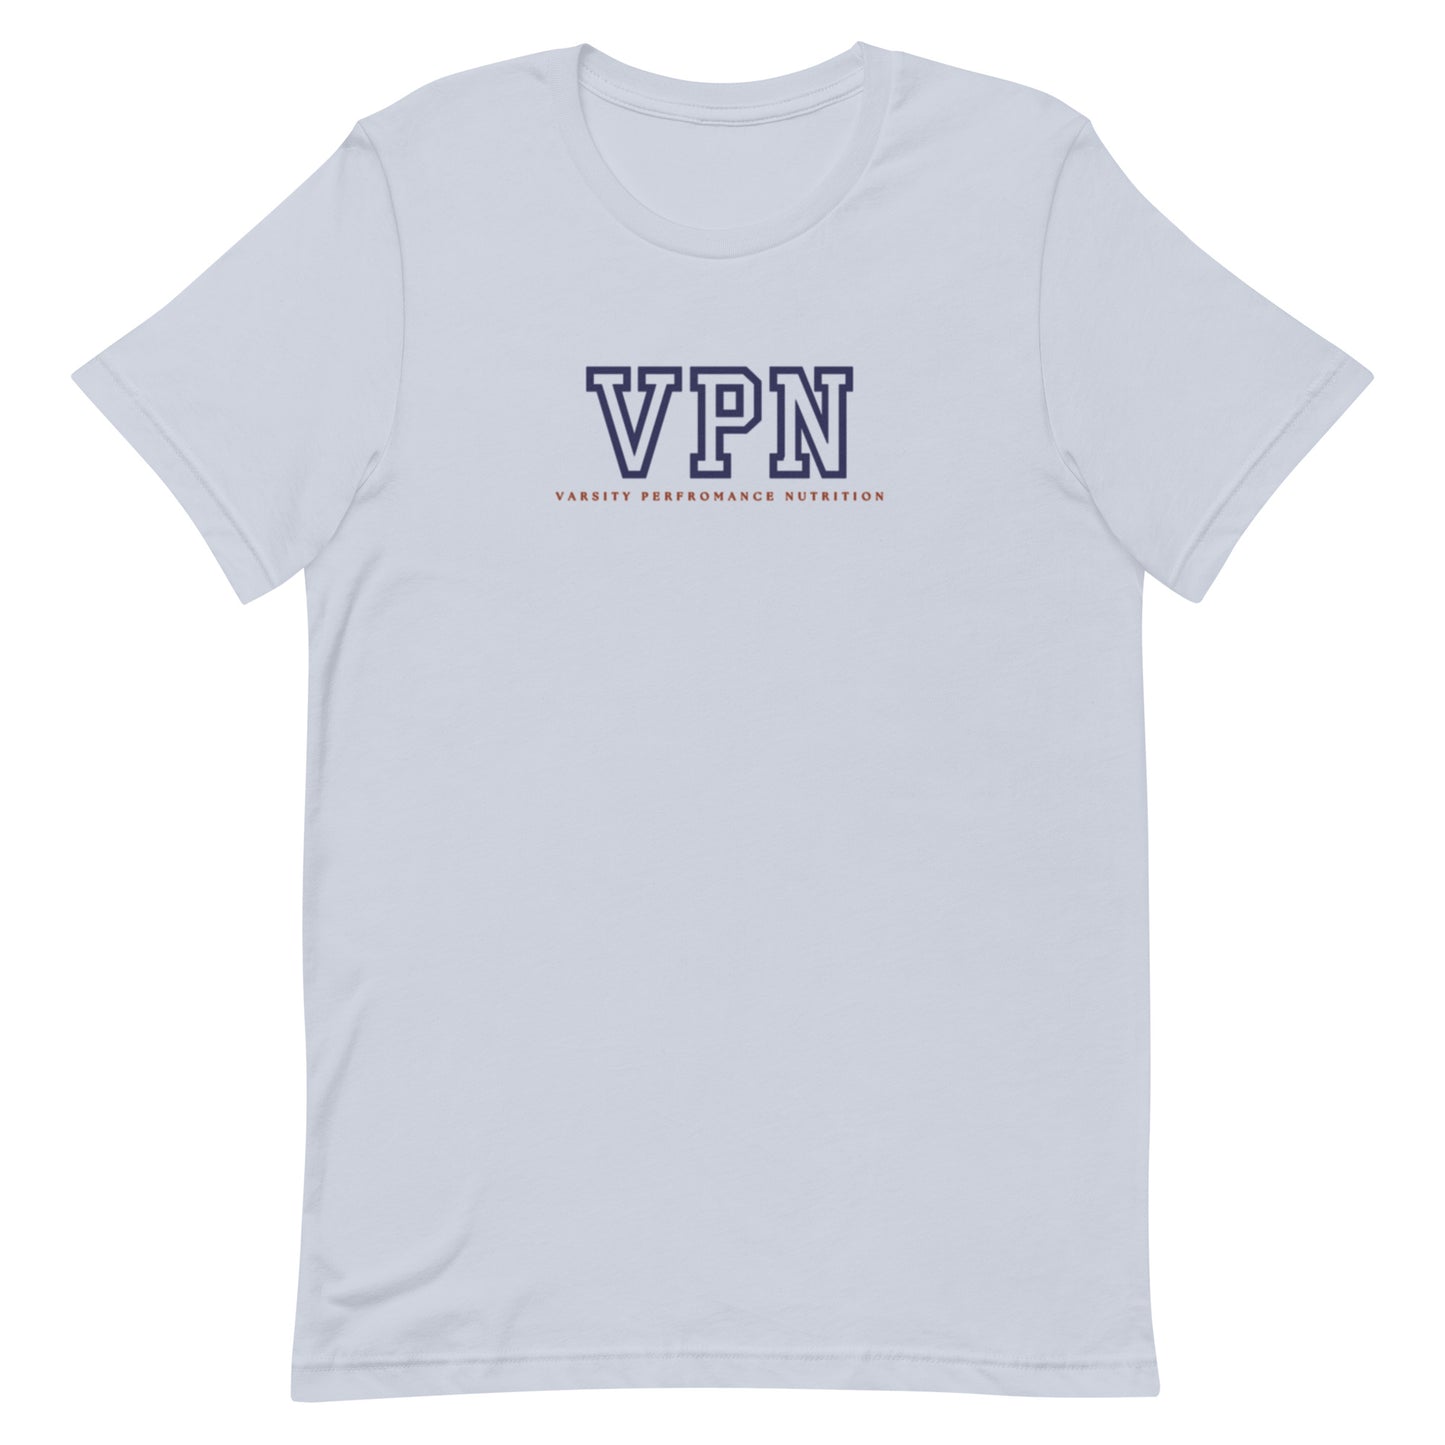 VPN Unisex Tennis t-shirt